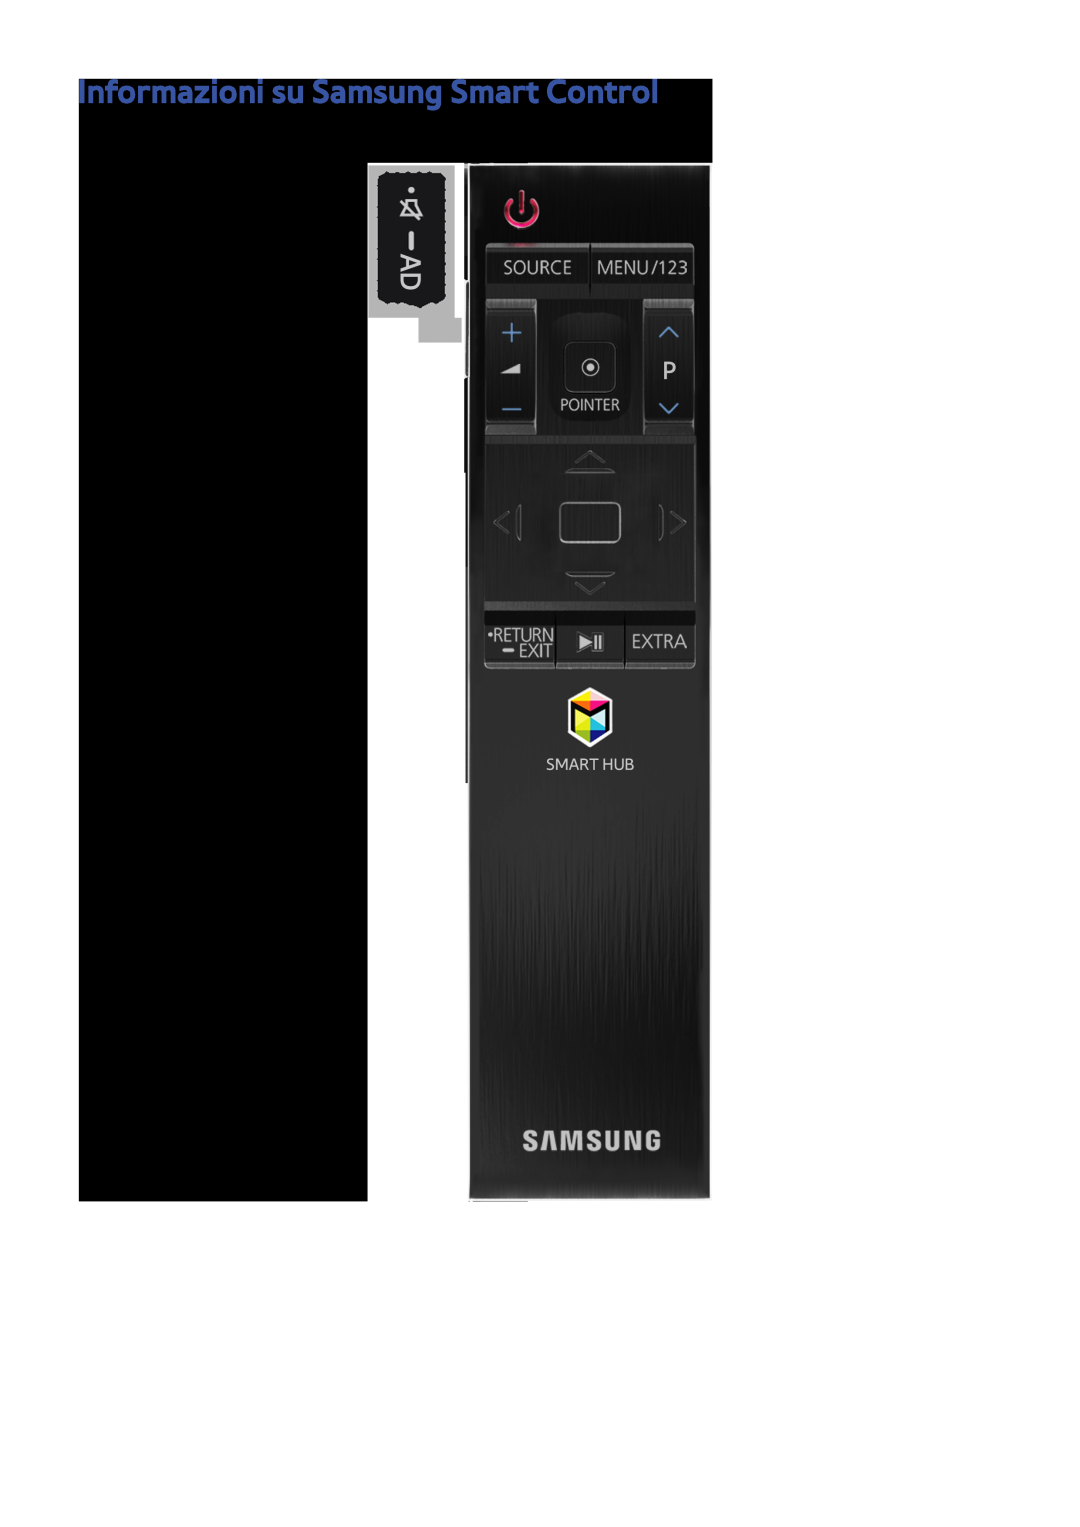 Samsung UE48JS9000TXZT, UE55JS9090QXZG, UE55JS9000LXXH, UE65JS9000LXXH, UE48JS9000LXXH Informazioni su Samsung Smart Control 